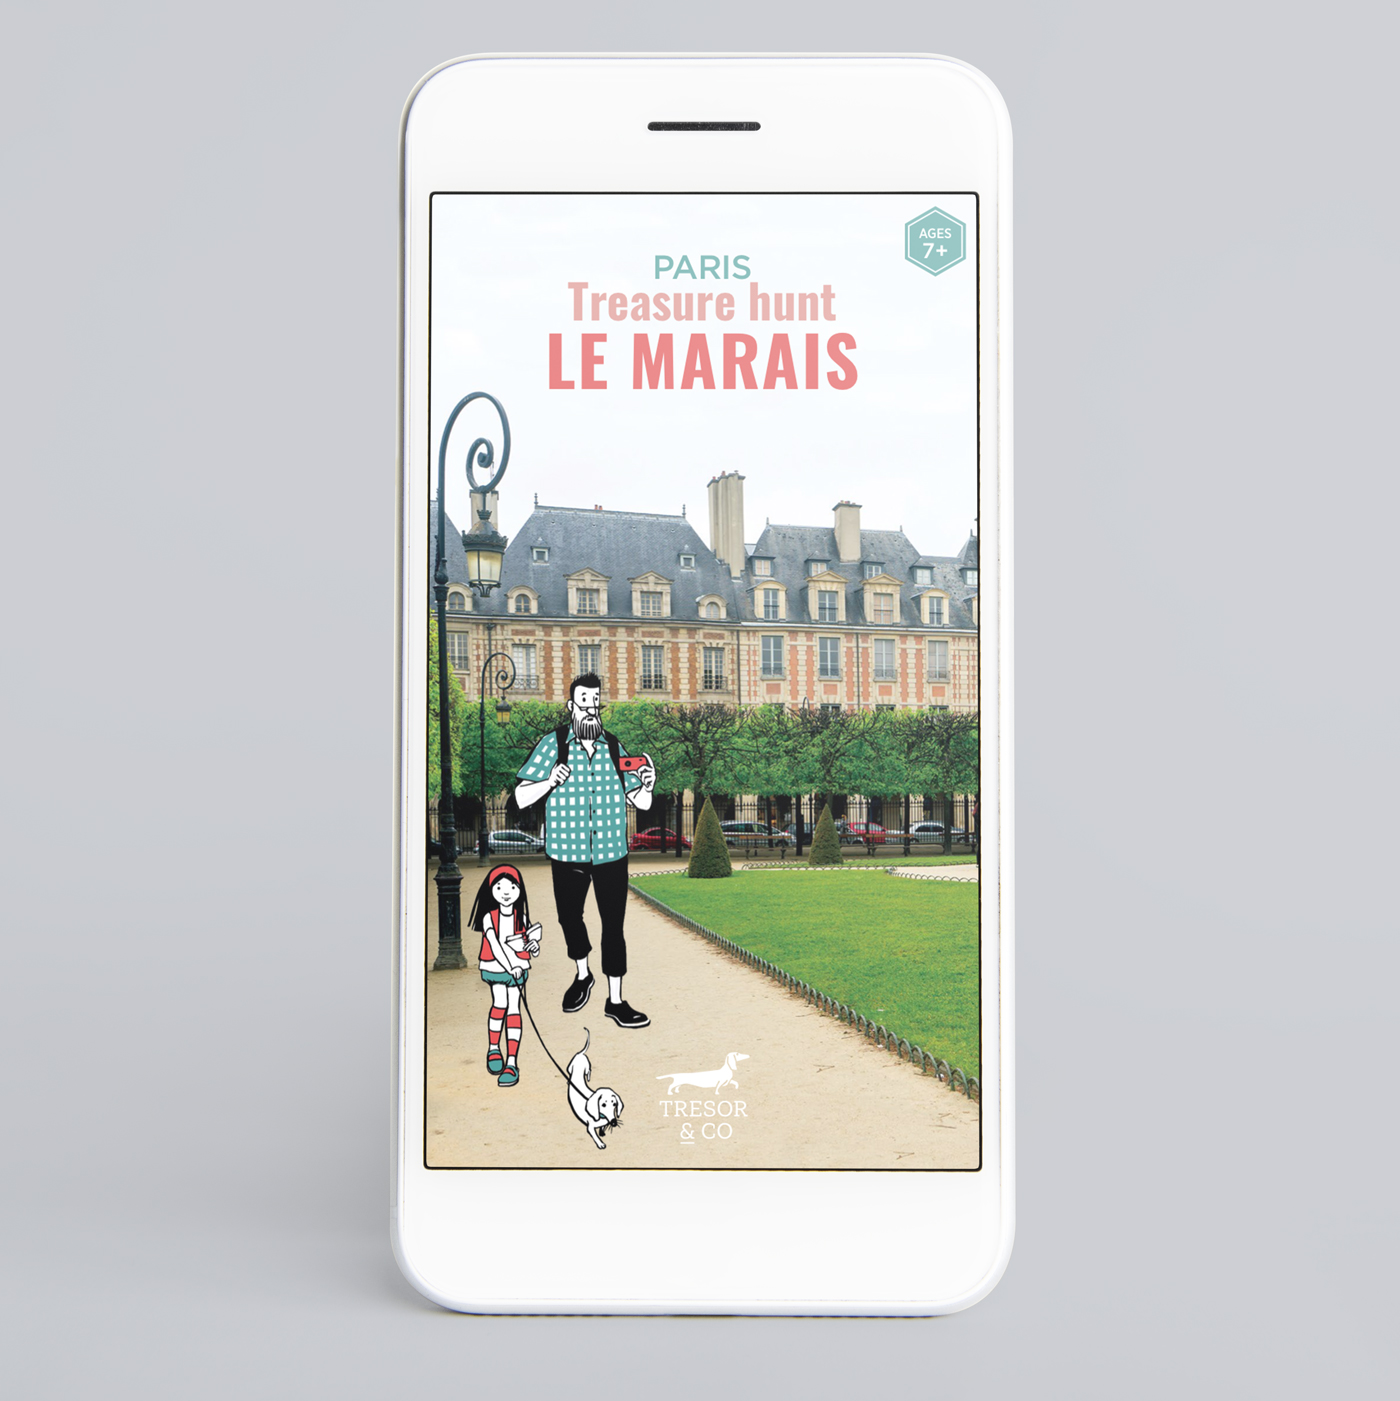 Treasure hunt in Le Marais - smartphone version